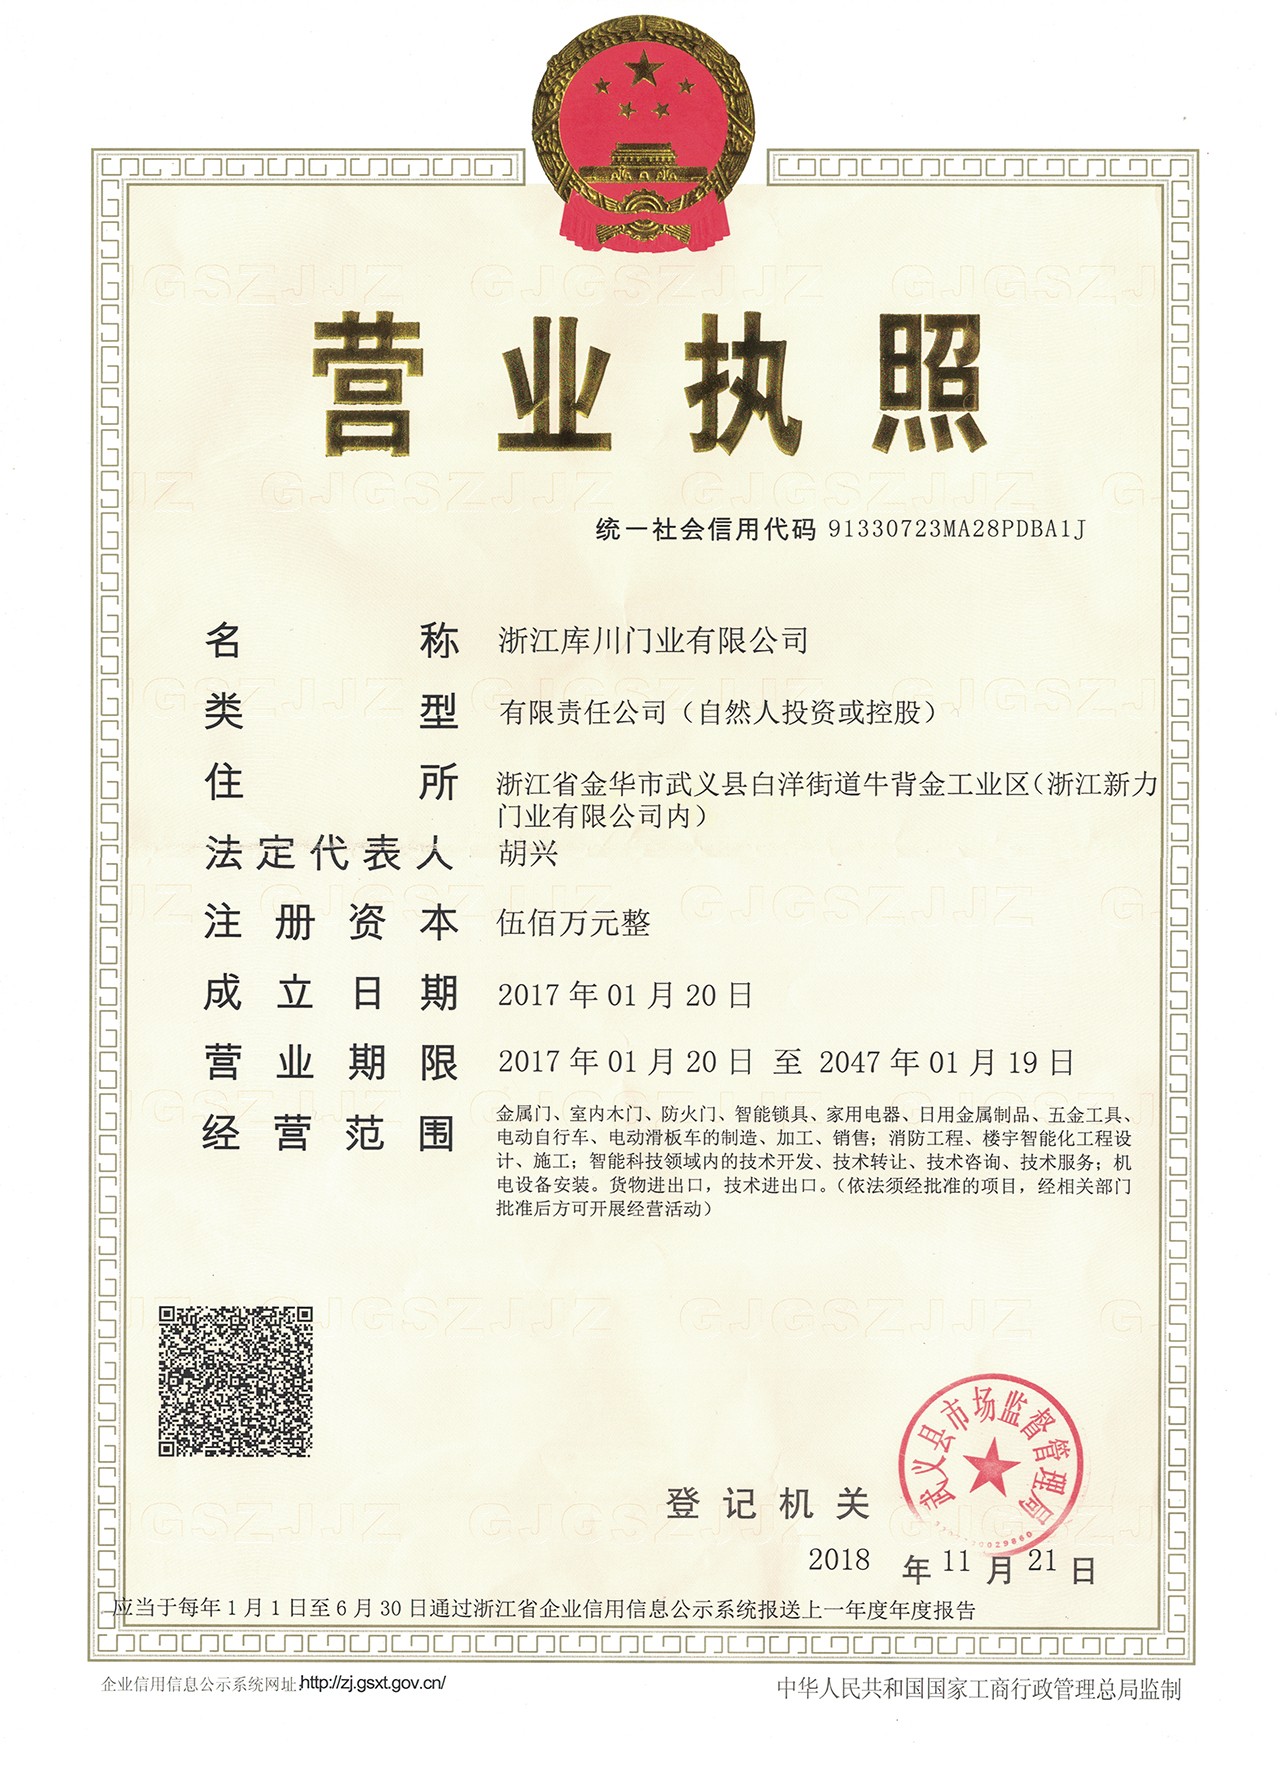 Kuchuan Business License